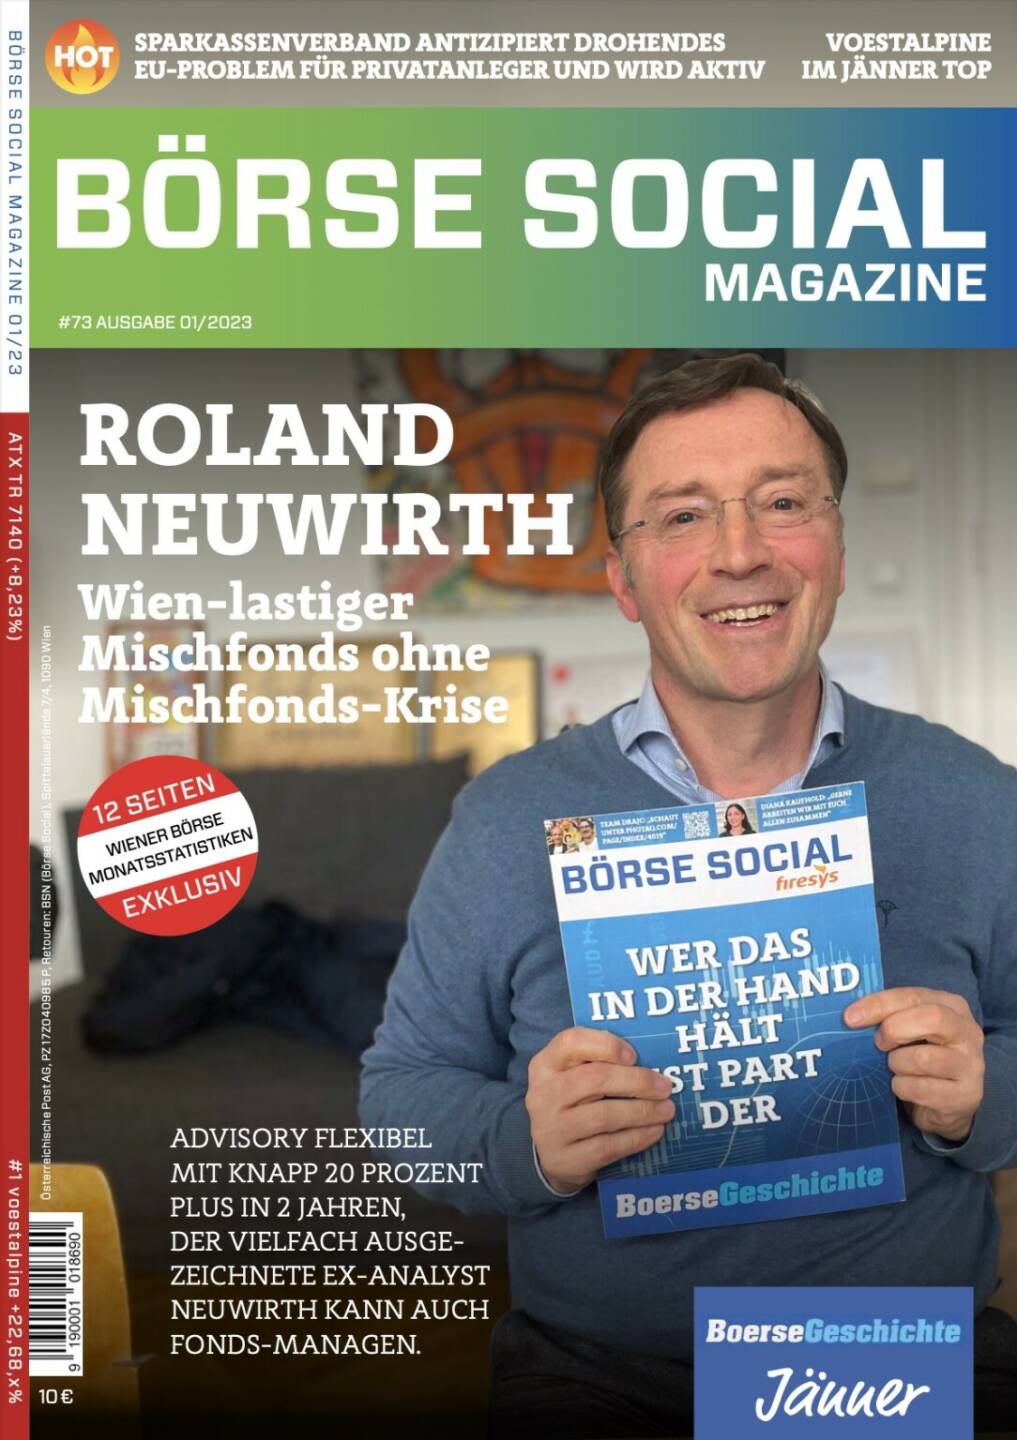 Magazine #73 - Roland Neuwirth - Wien-lastiger Mischfonds ohne Mischfonds-Krise